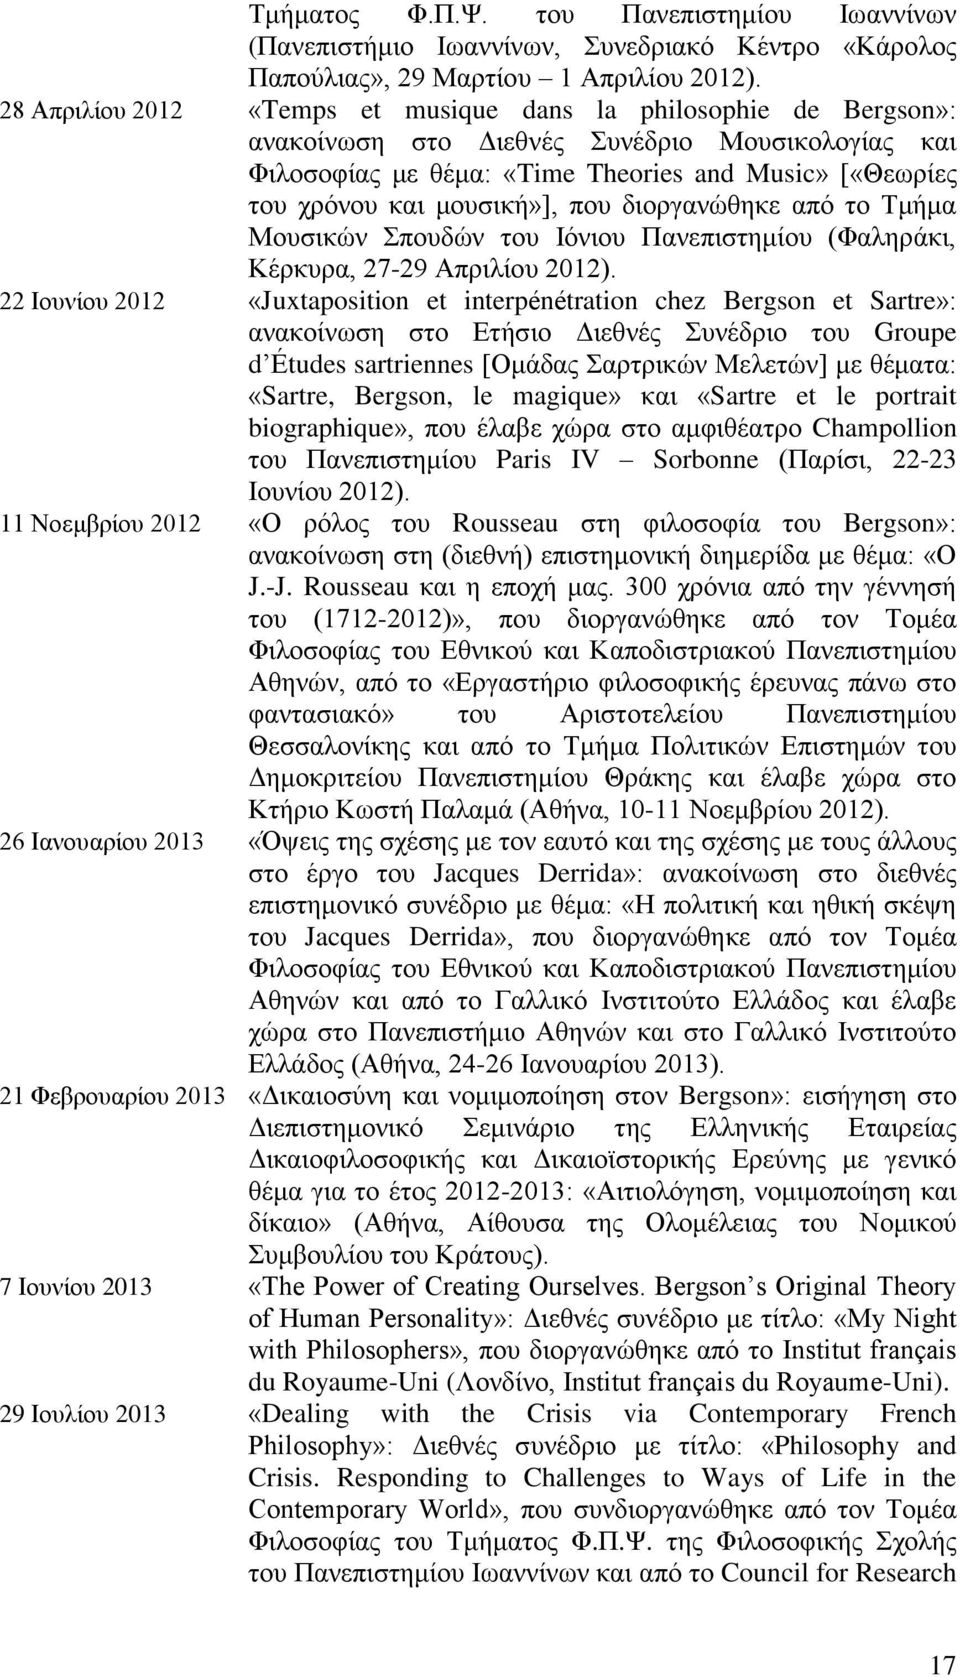 που διοργανώθηκε από το Τμήμα Μουσικών Σπουδών του Ιόνιου Πανεπιστημίου (Φαληράκι, Κέρκυρα, 27-29 Απριλίου 2012).